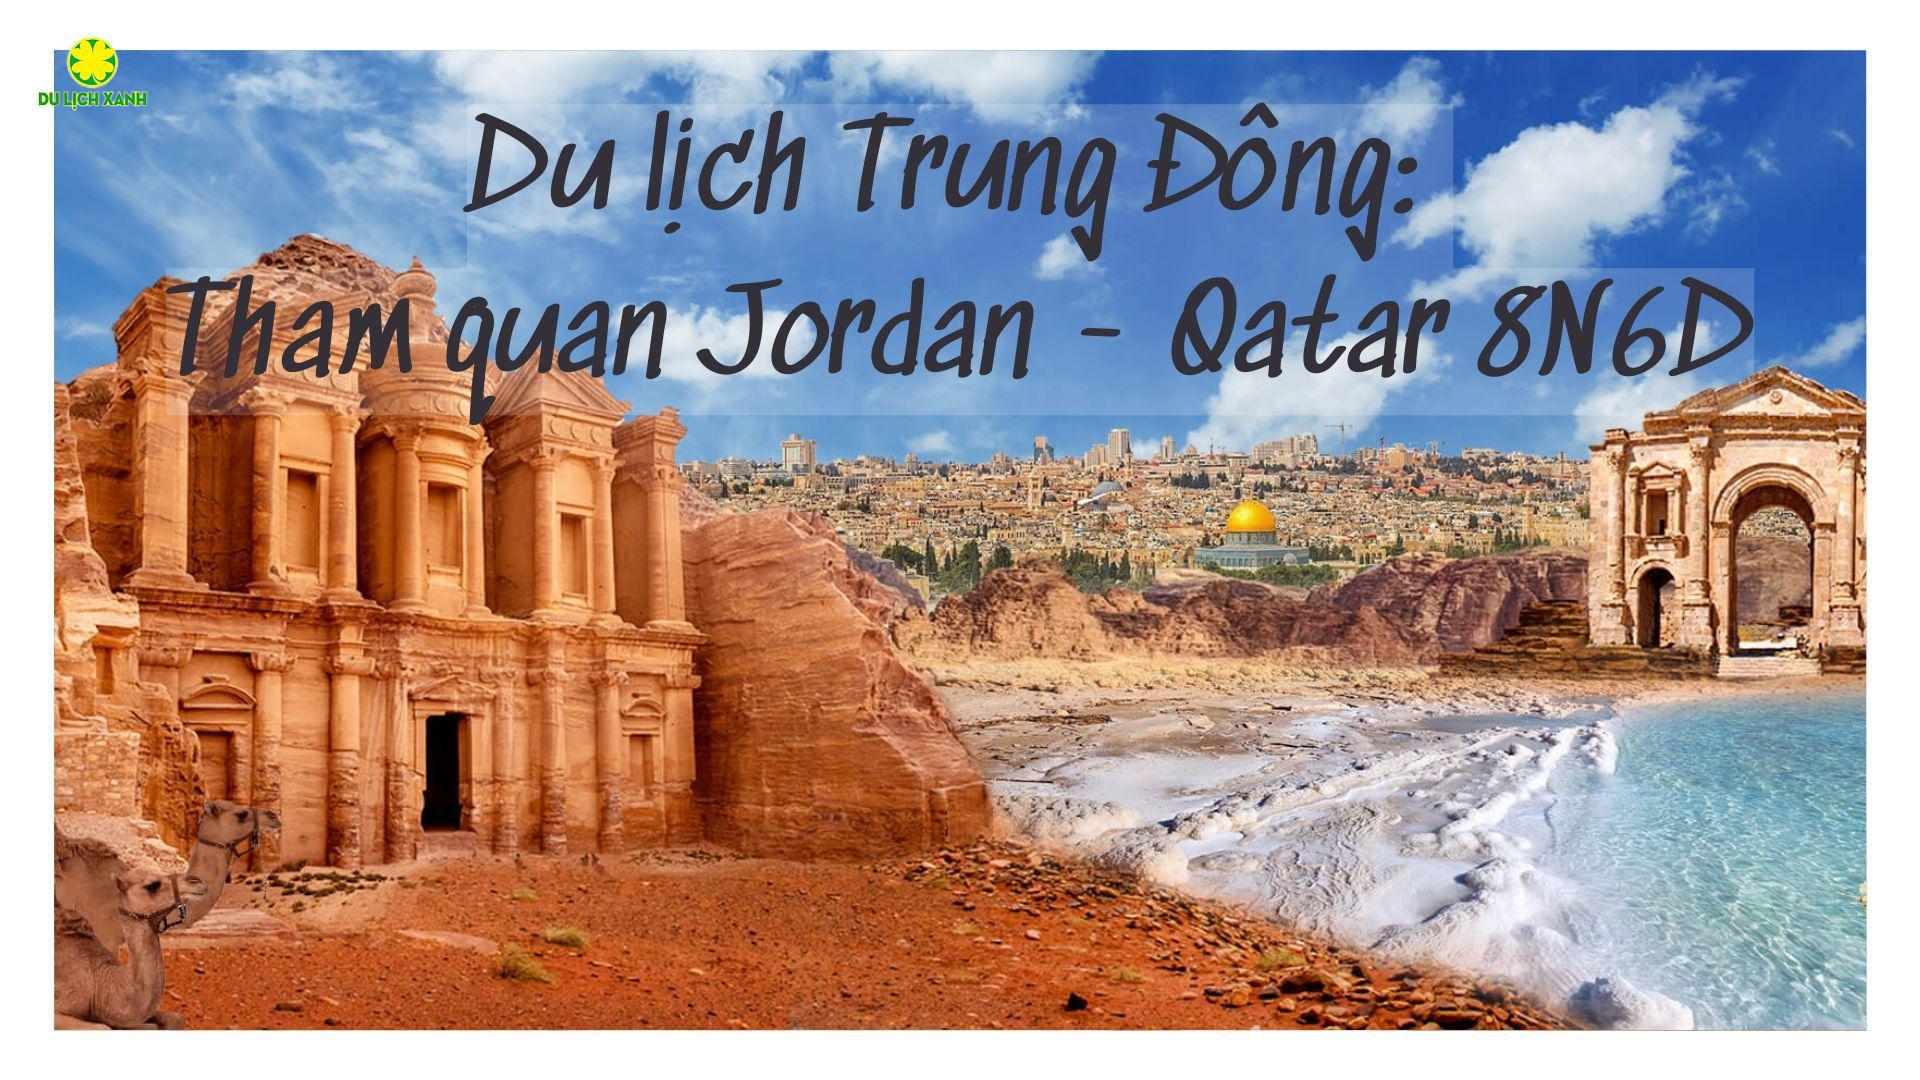 Du lịch Trung Đông: Tham quan Jordan - Qatar 8N6D